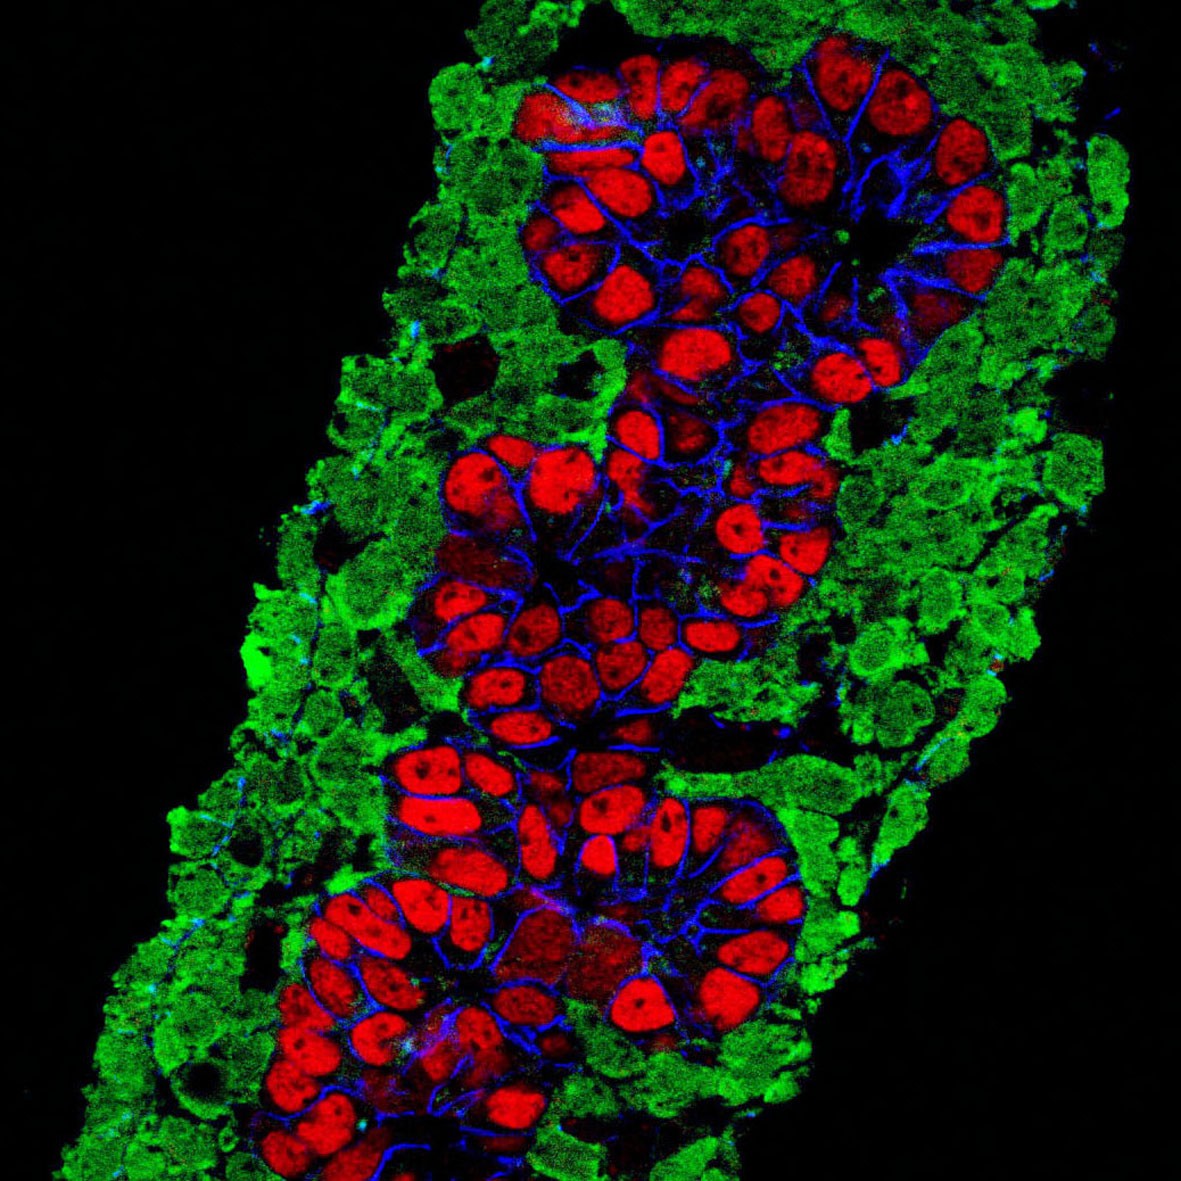 高血糖会导致每个β细胞每秒泄漏10万个ATP分子，胰岛细胞就是这样被<font color="red">活活</font>饿死的